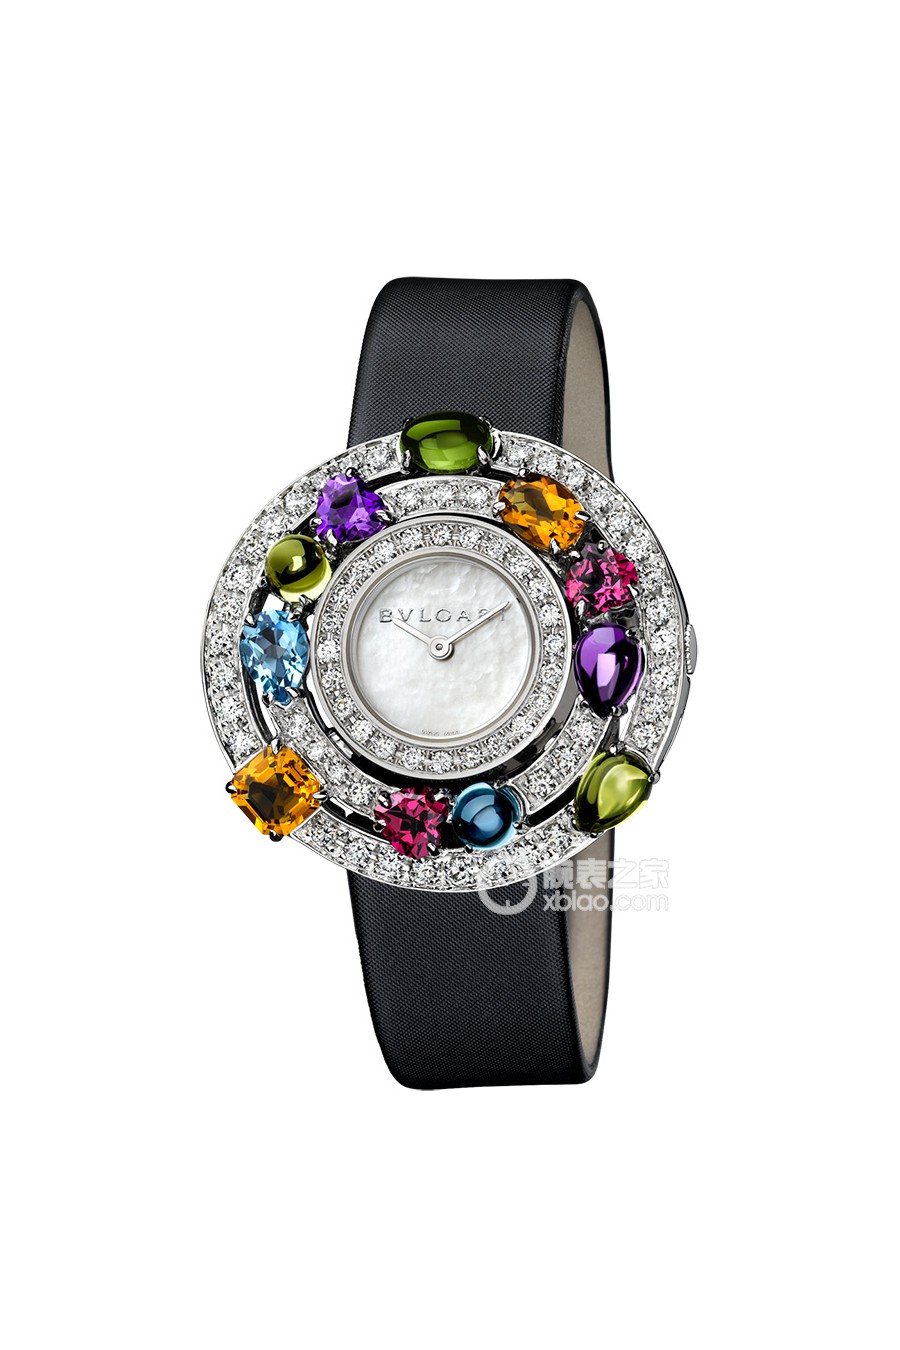 宝格丽高级珠宝腕表系列102010 AEW36D2CWL